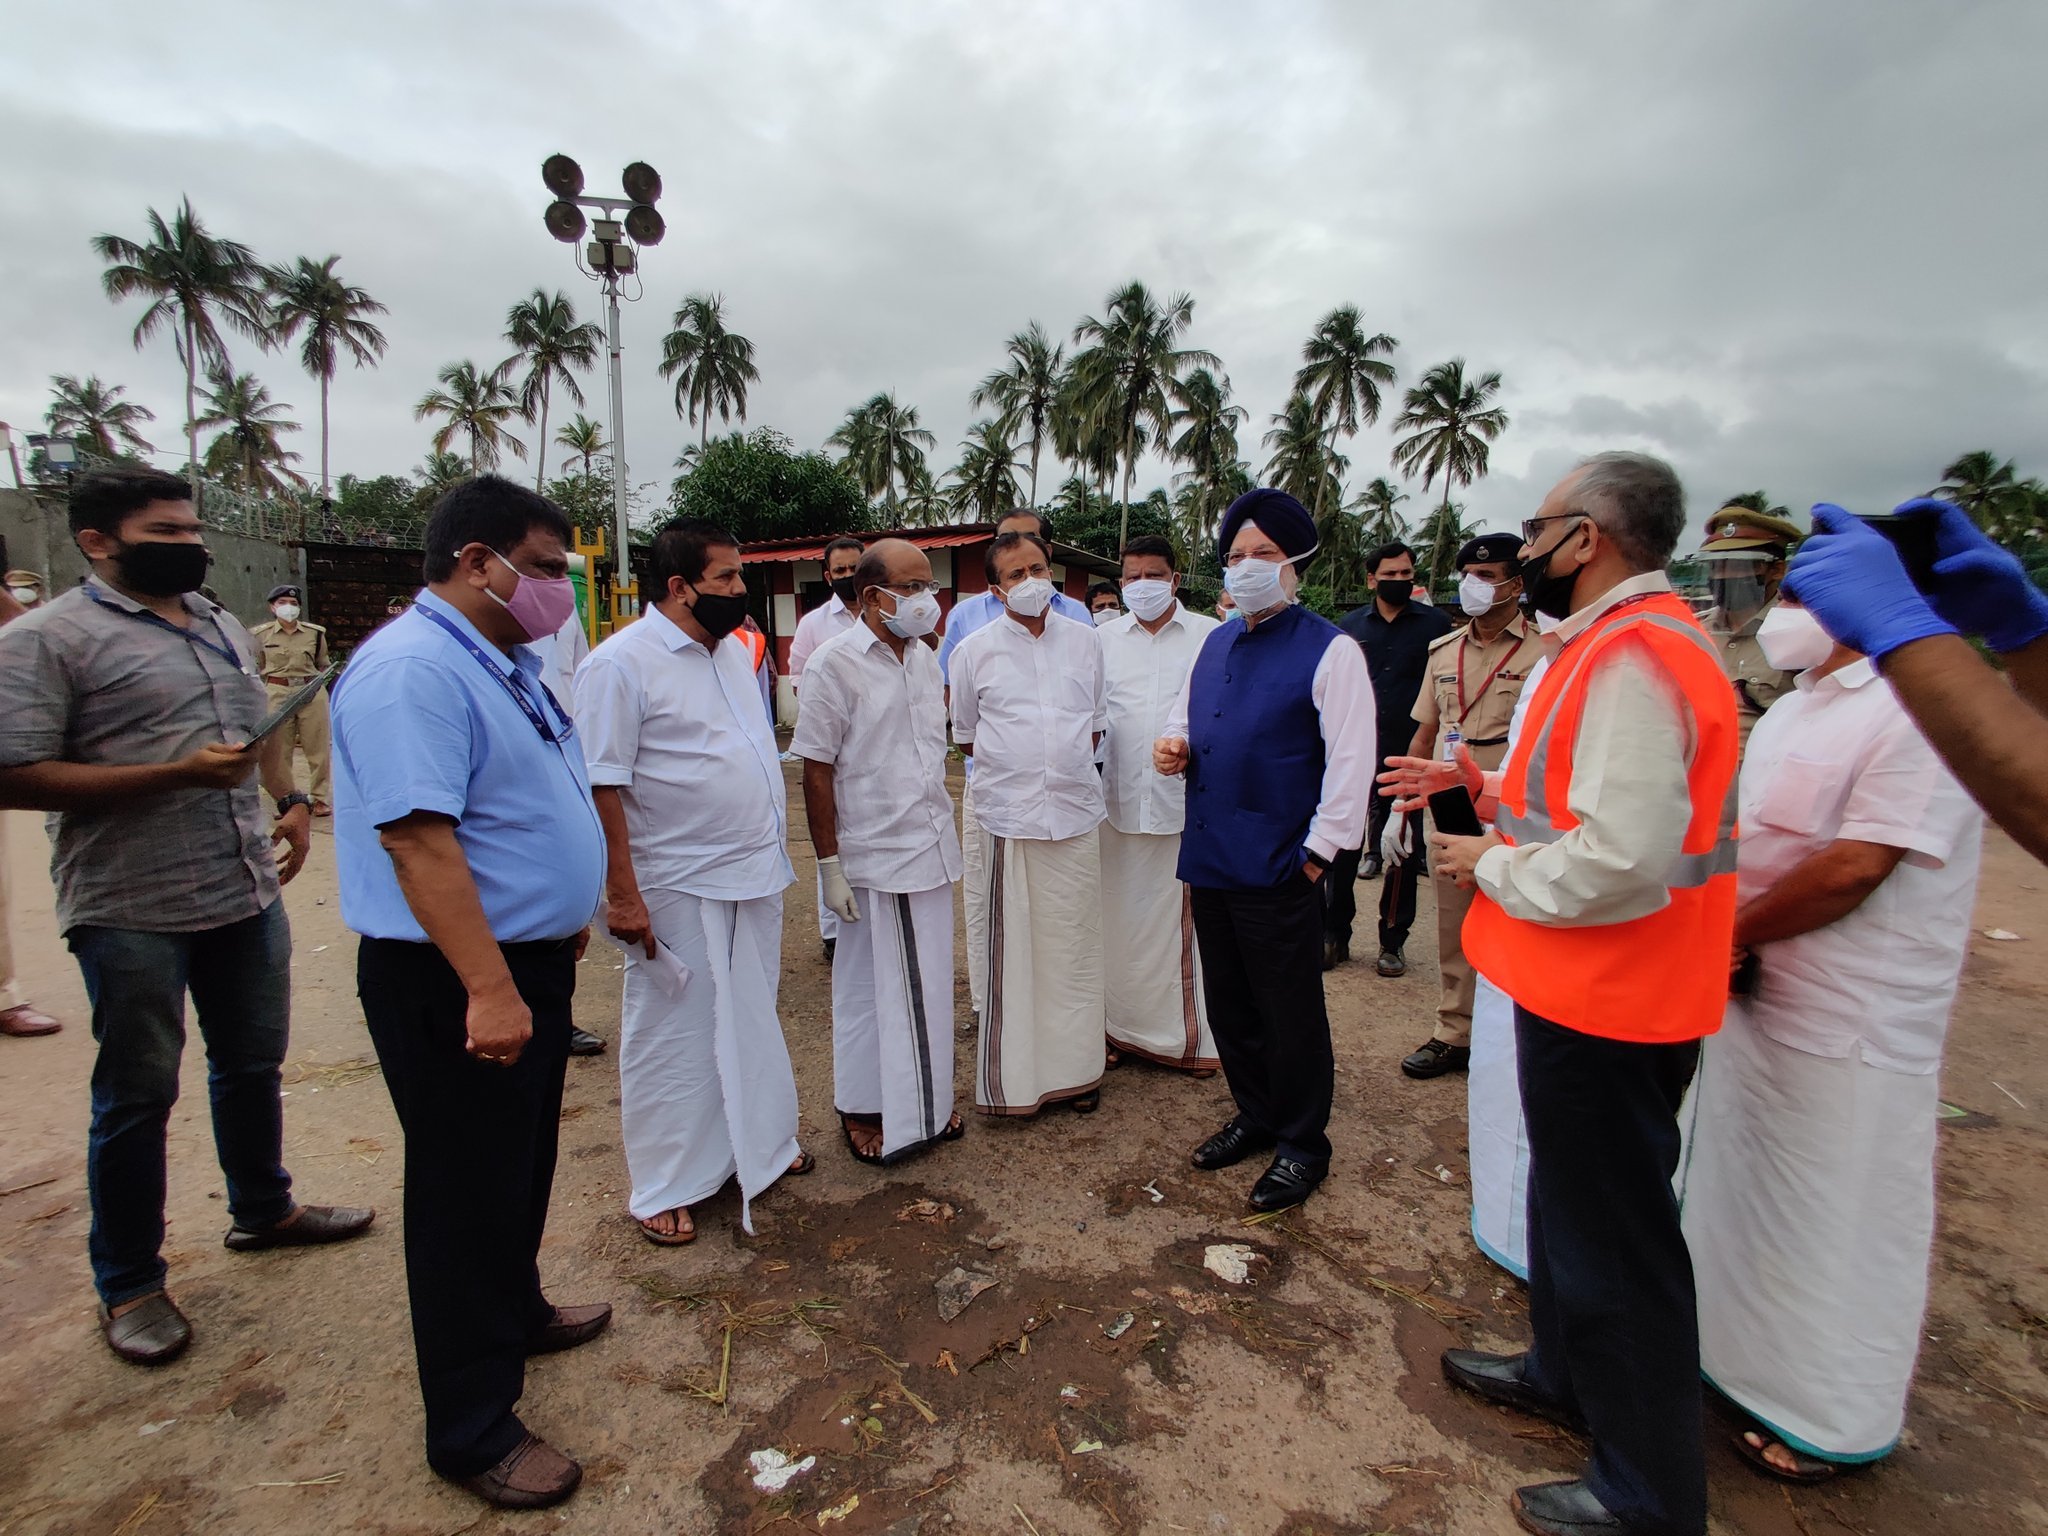 विमान दुर्घटनेची माहिती कळताच पंतप्रधान नरेंद्र मोदी यांनी केरळचे मुख्यमंत्री पी. विजयन यांना दूरध्वनी करून केंद्र सरकारकडून आवश्यक ती सर्व मदत करण्याचे आश्वासन दिले.